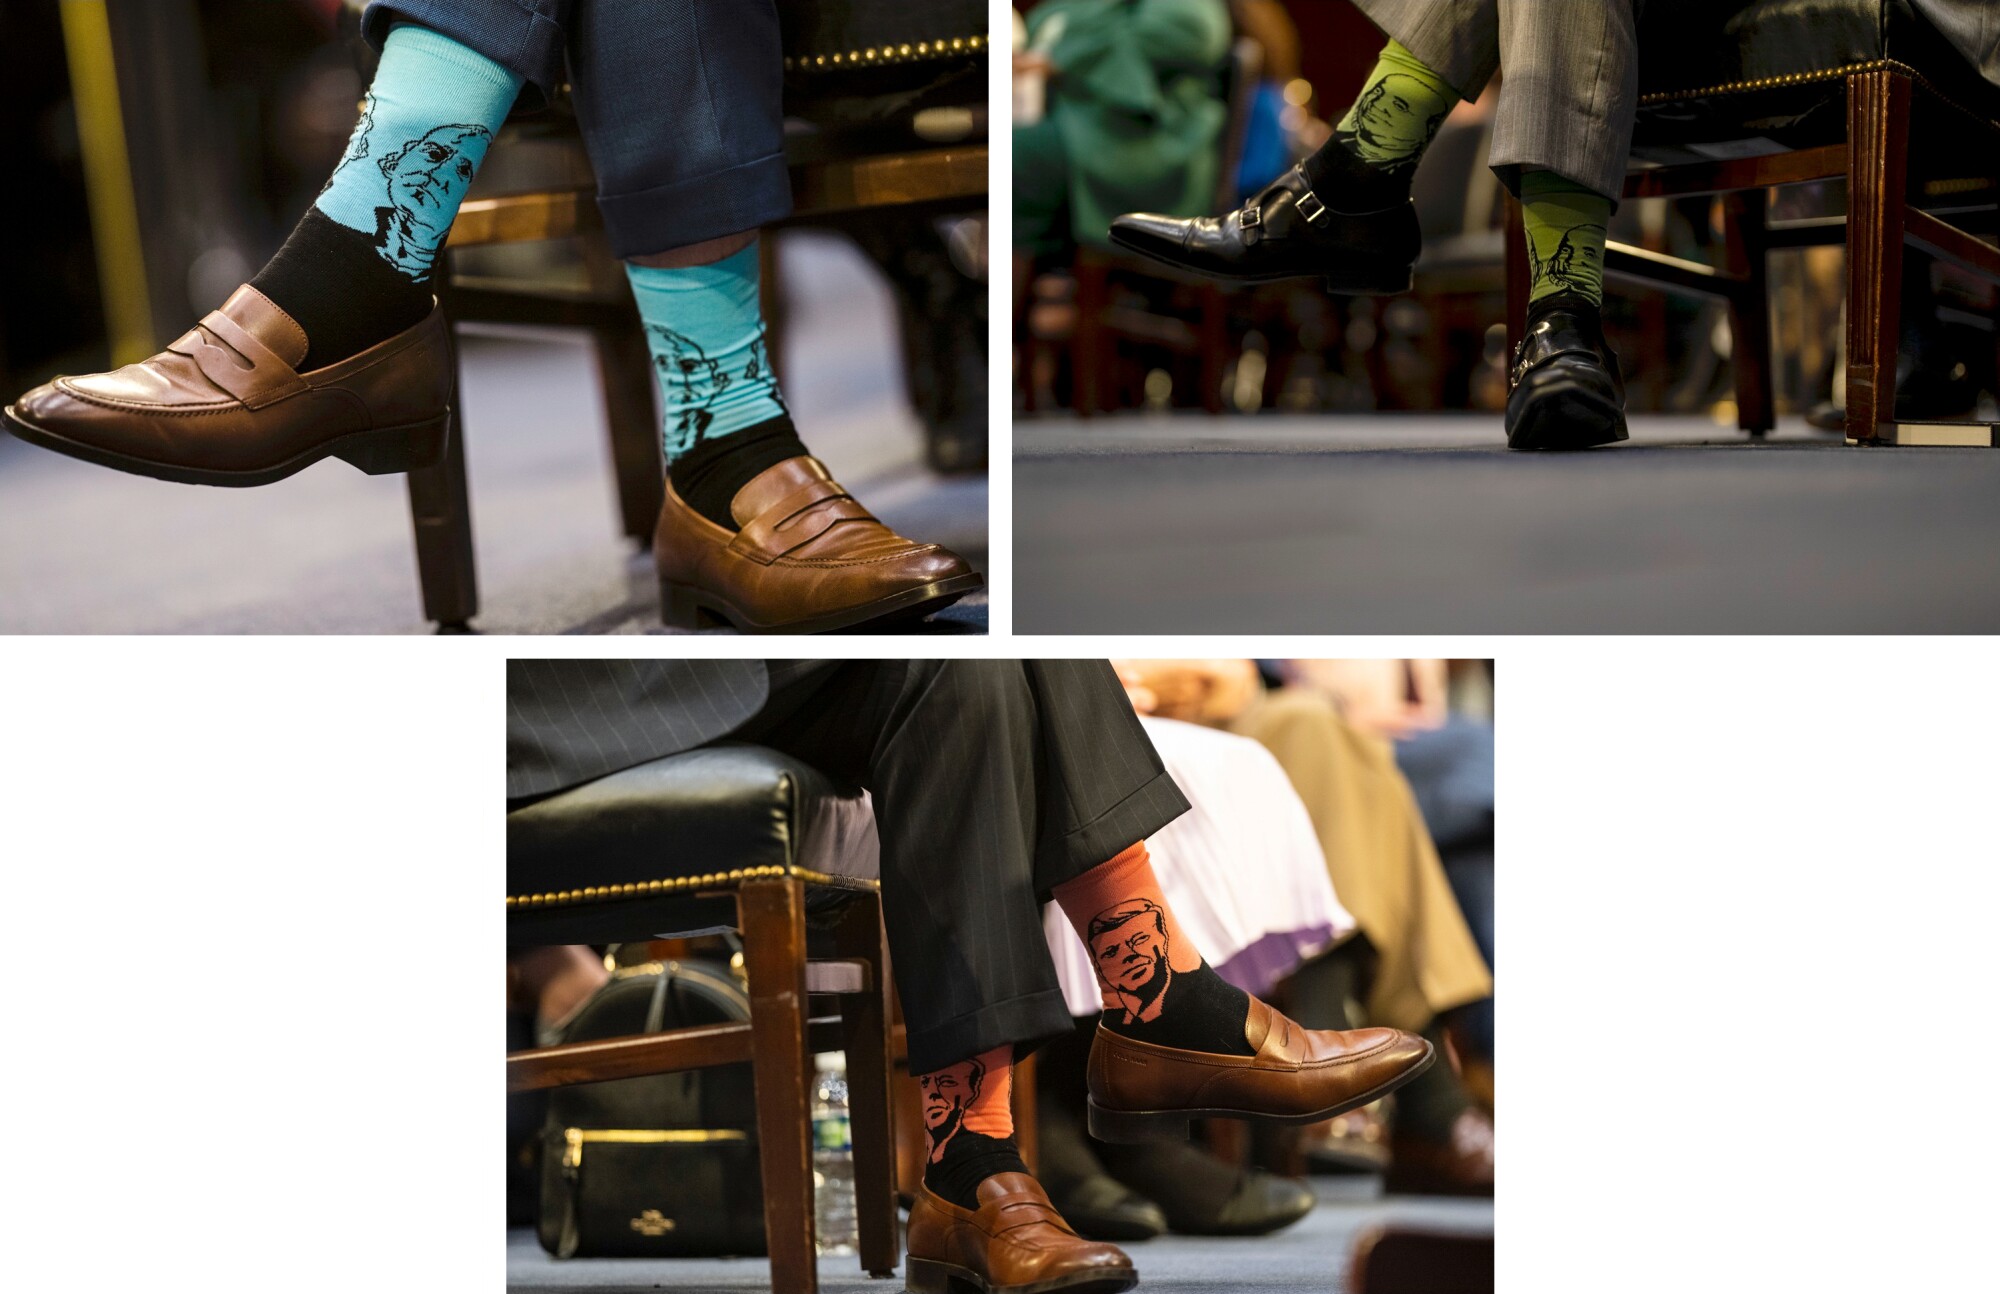 Patrick Jackson, Amerikan tarihinin önde gelen siyasi figürlerinin yüzlerini gösteren çoraplar giyiyor.